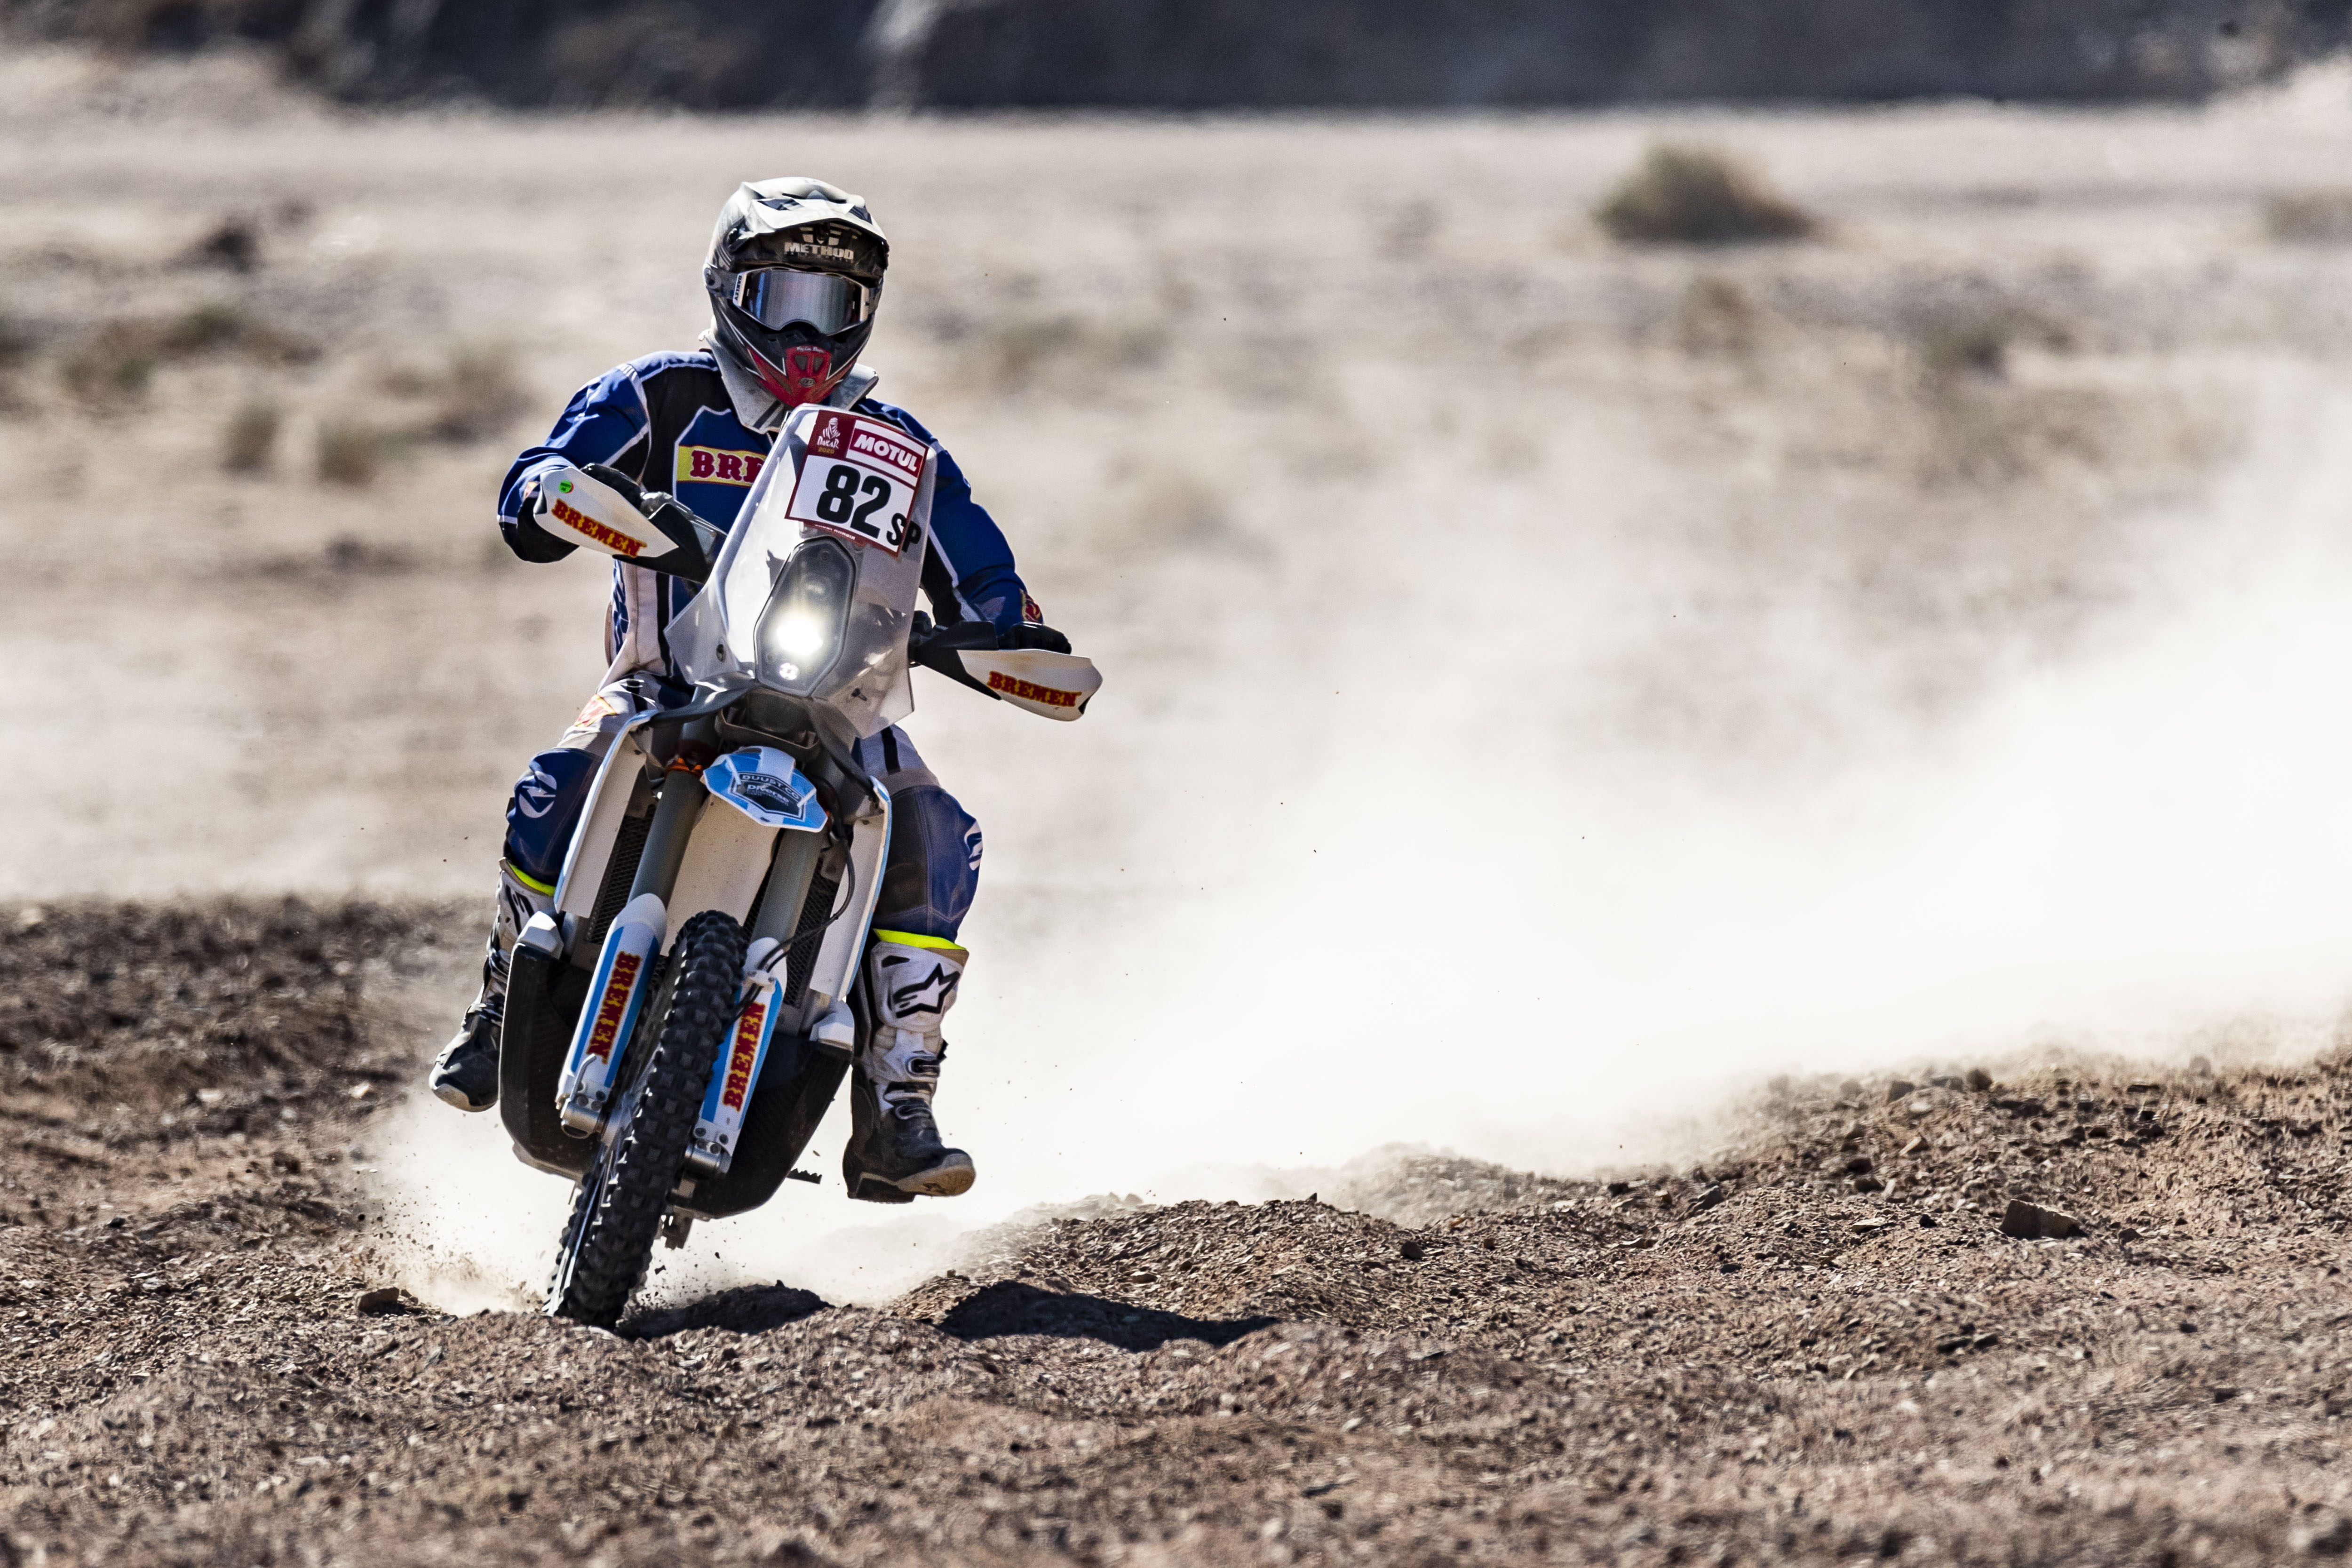 Francisco Arredondo sigue realizando un buen Rali Dakar 2020, lo que le ha permitido seguir subiendo puestos en la clasificación general en la categoría motocicletas. Foto Prensa Libre: Cortesía.
